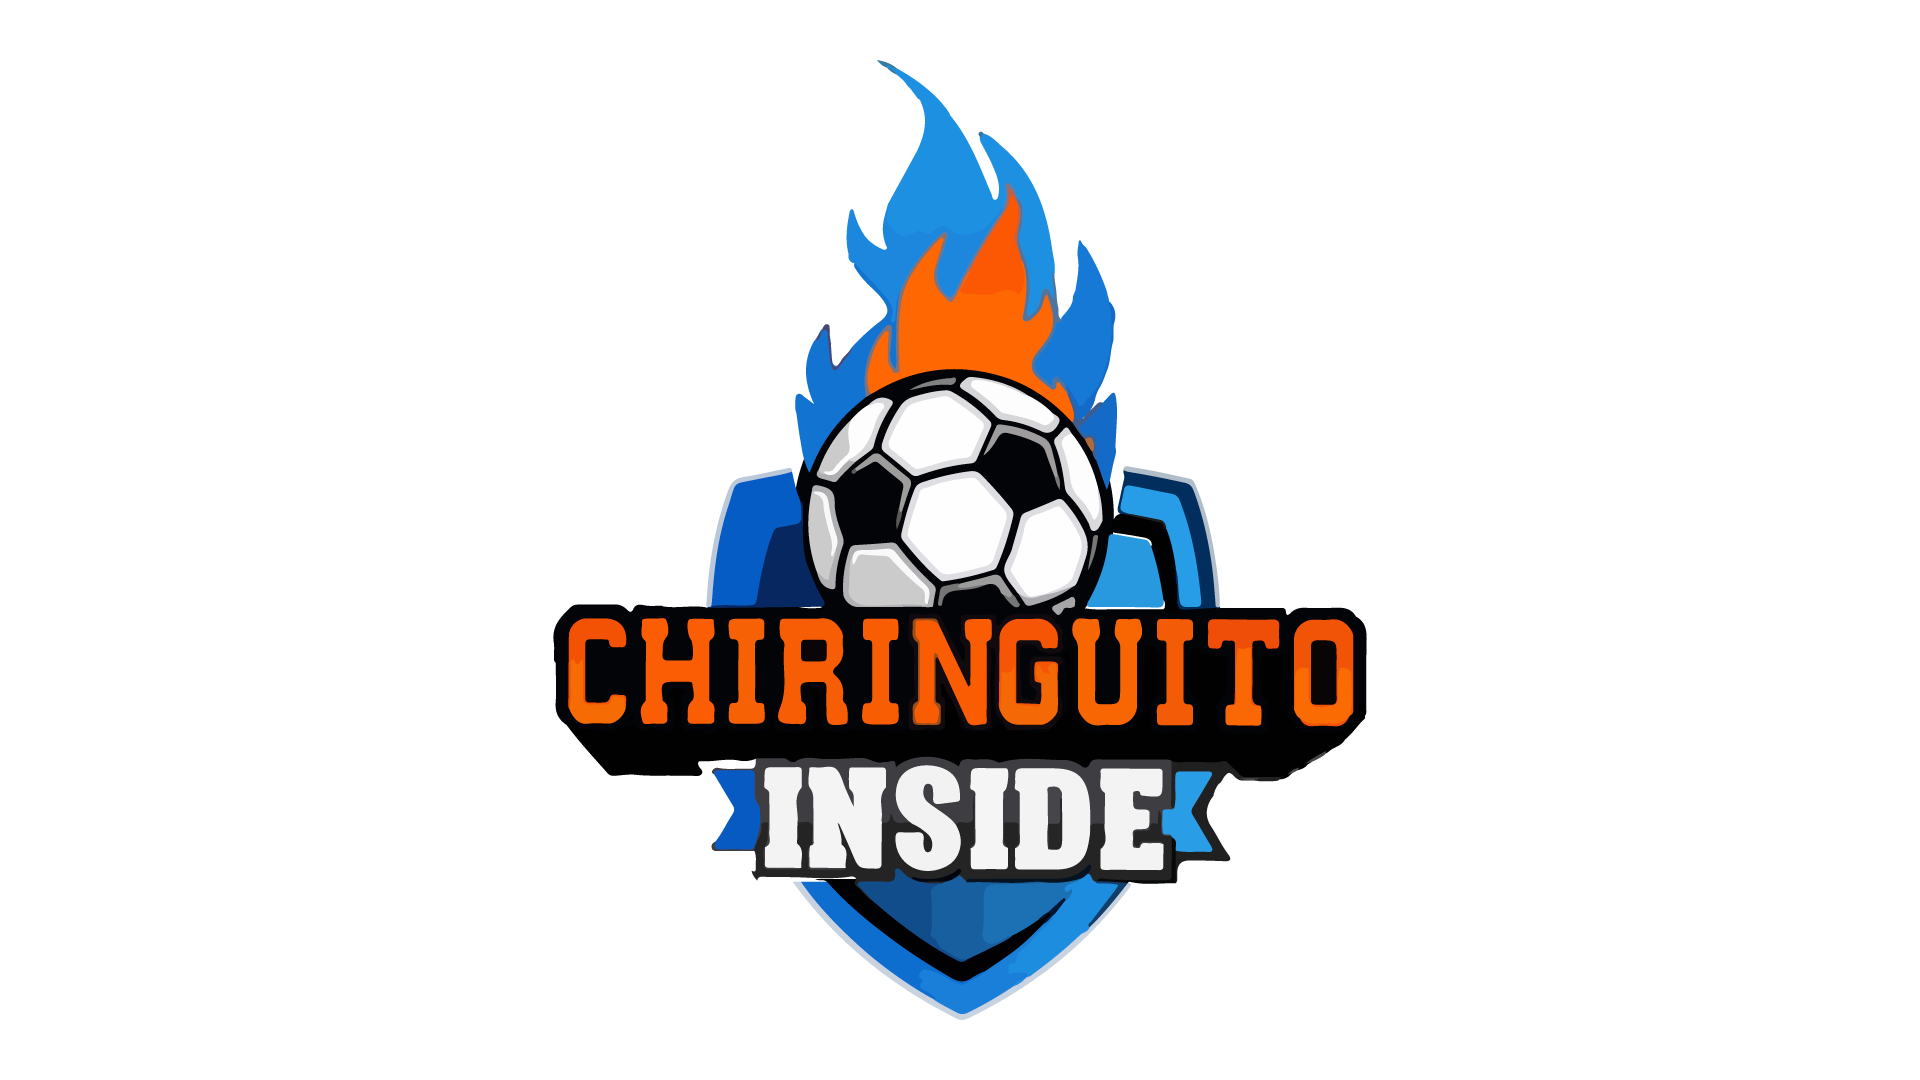 El Chiringuito Inside en directo, Online